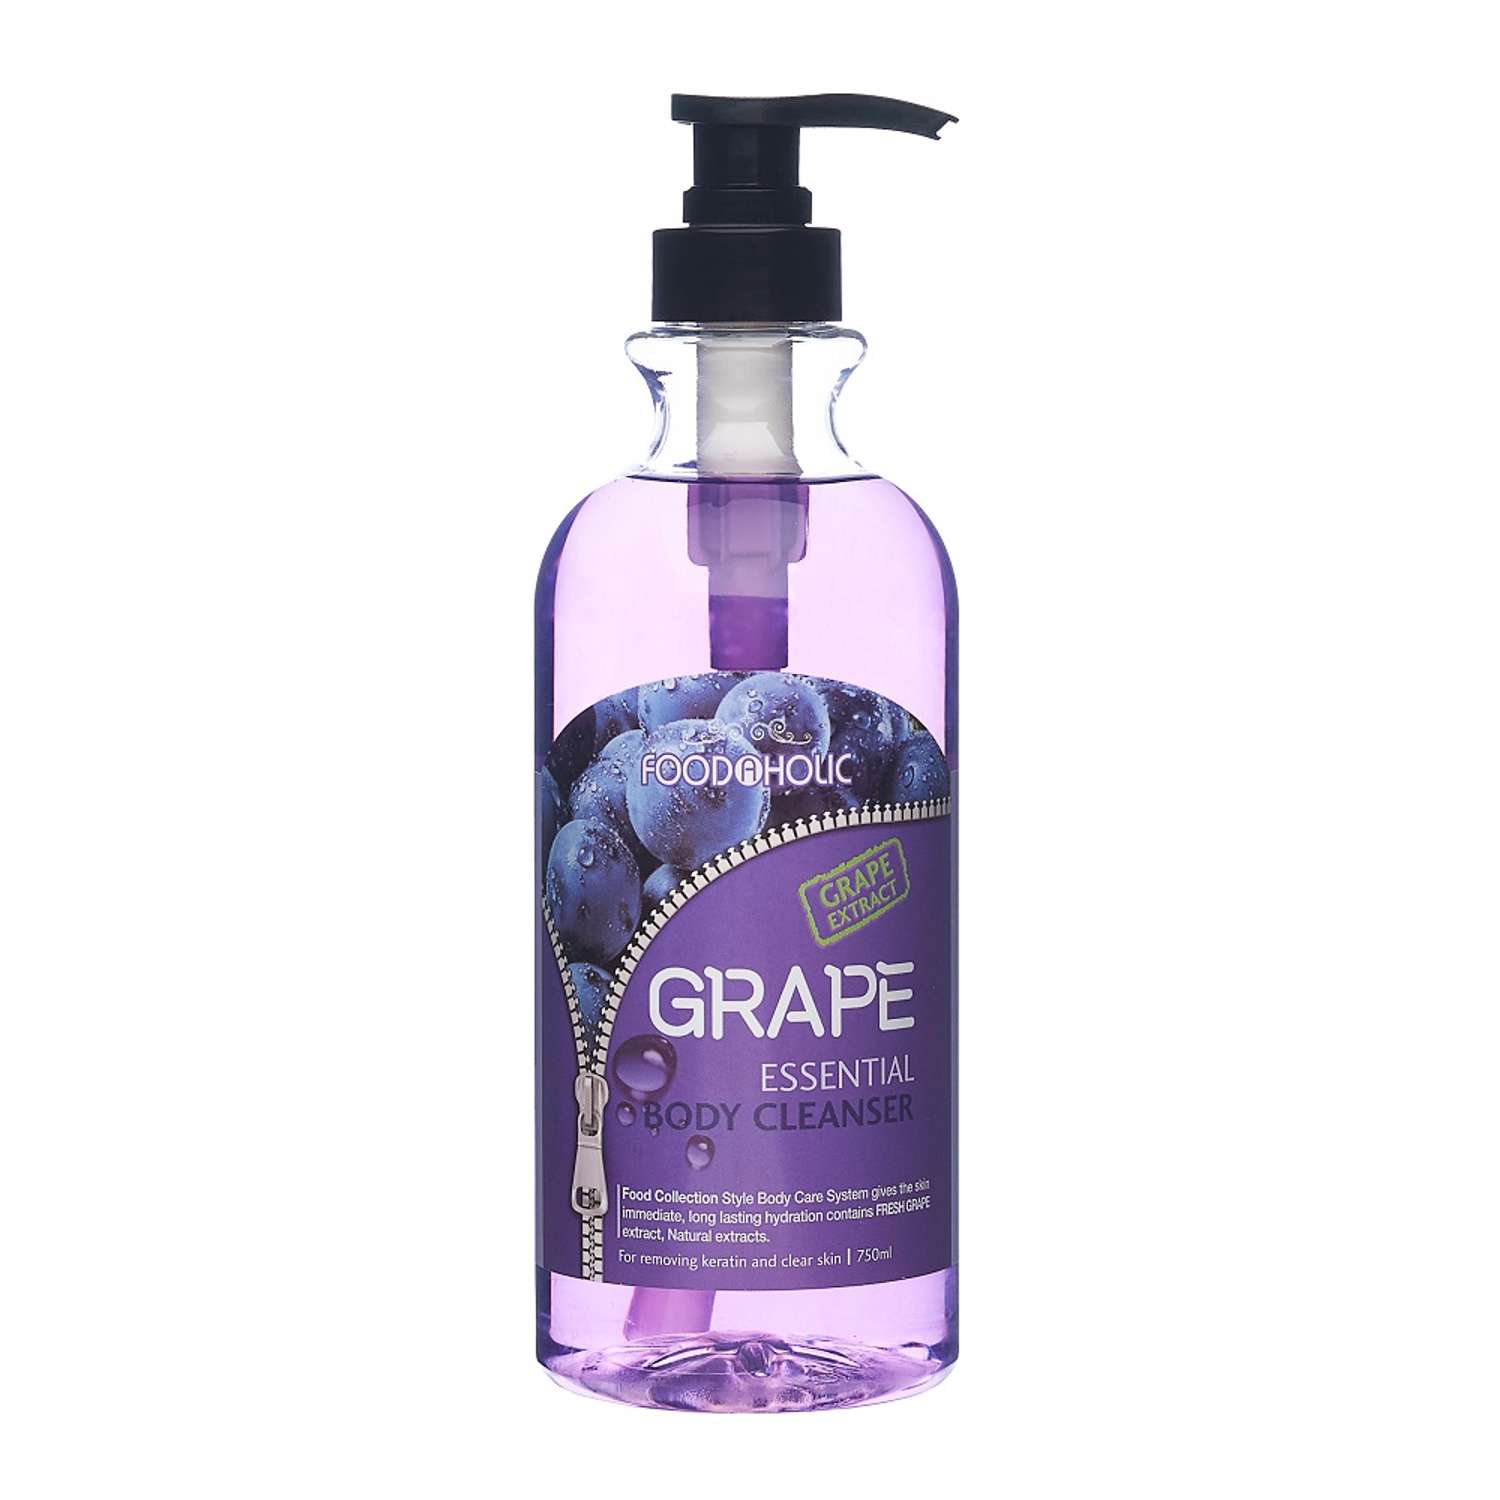 Гель для душа FOODAHOLIC Essential Body Cleanser Grape с экстрактом винограда 750 мл - фото 1